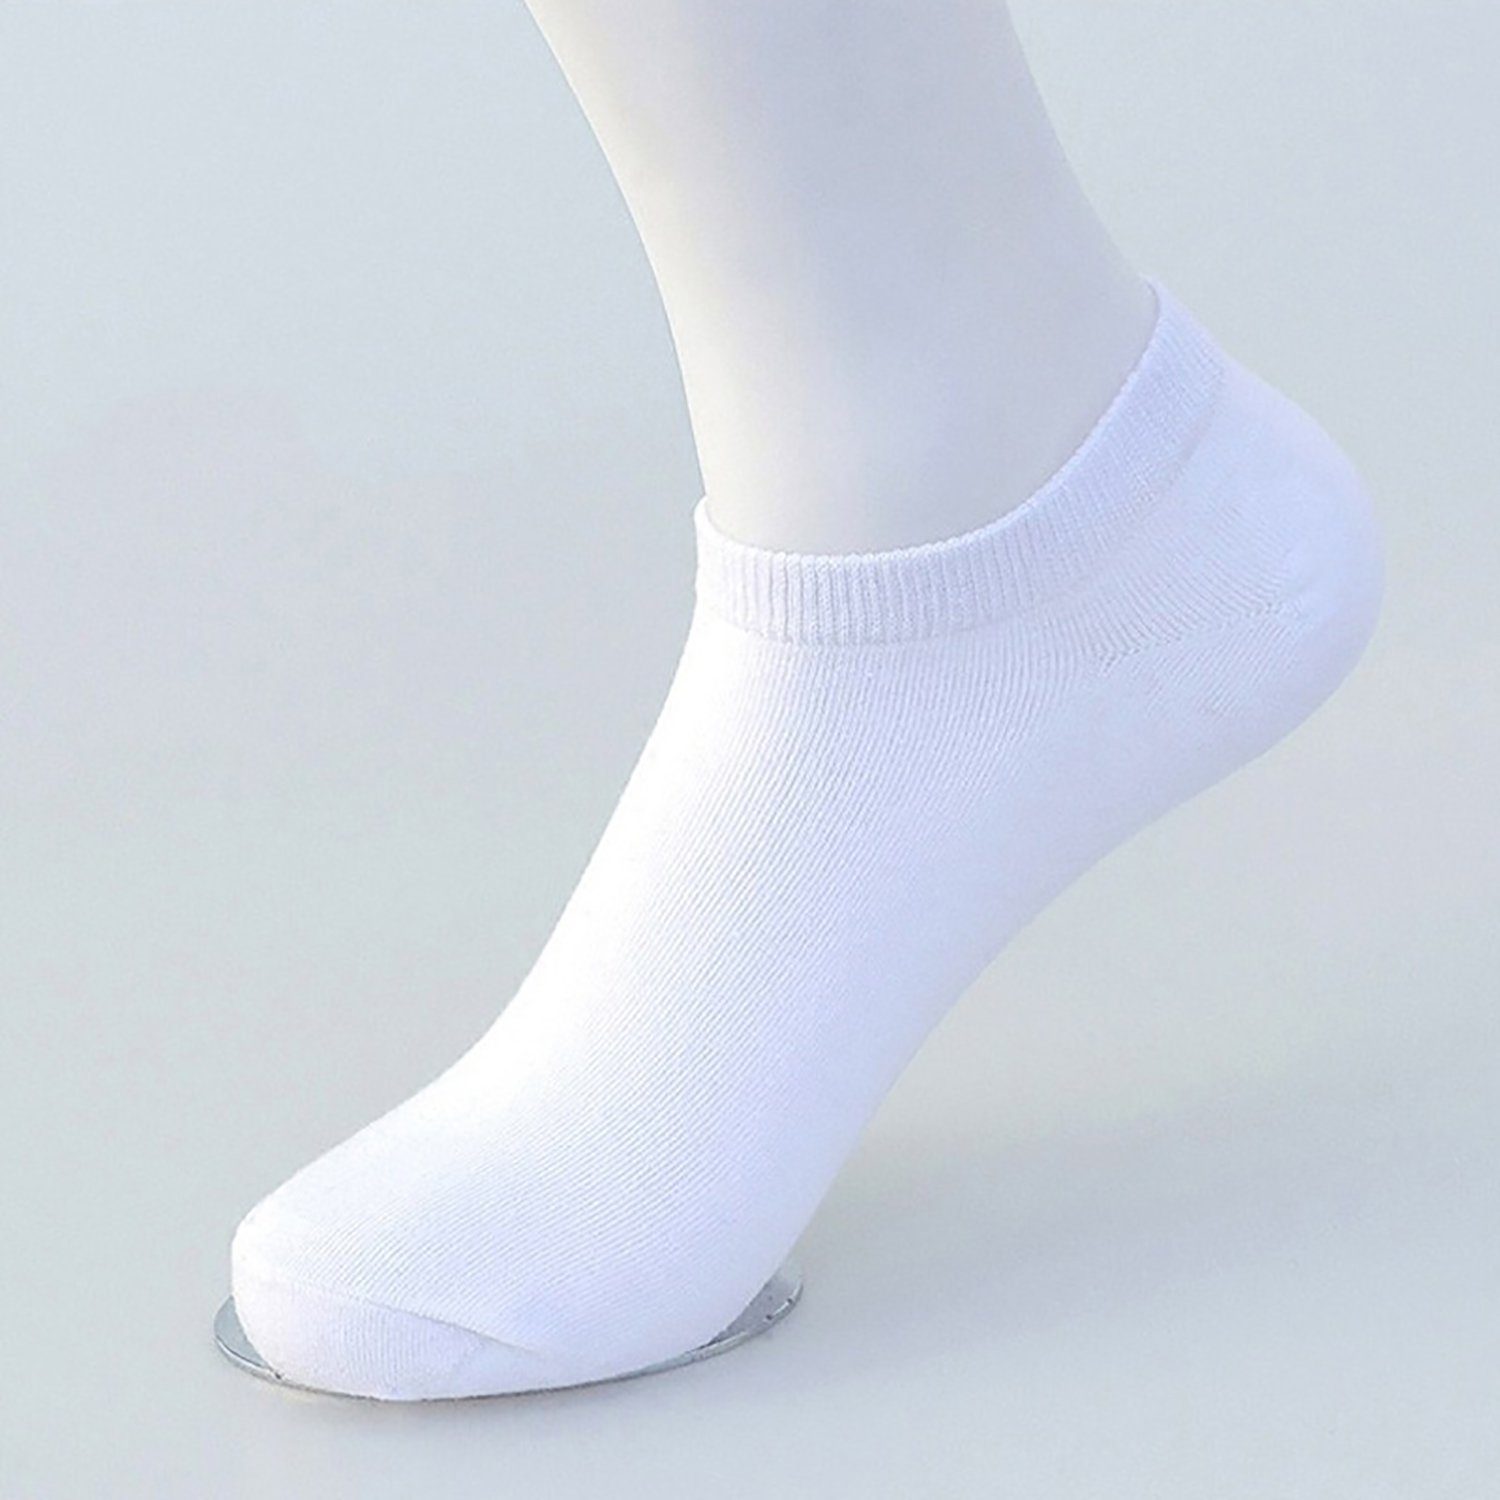 Daisred Freizeitsocken 30 Paar Einweg-Socken Sportsocken Unisex Baum-wolle Weiß